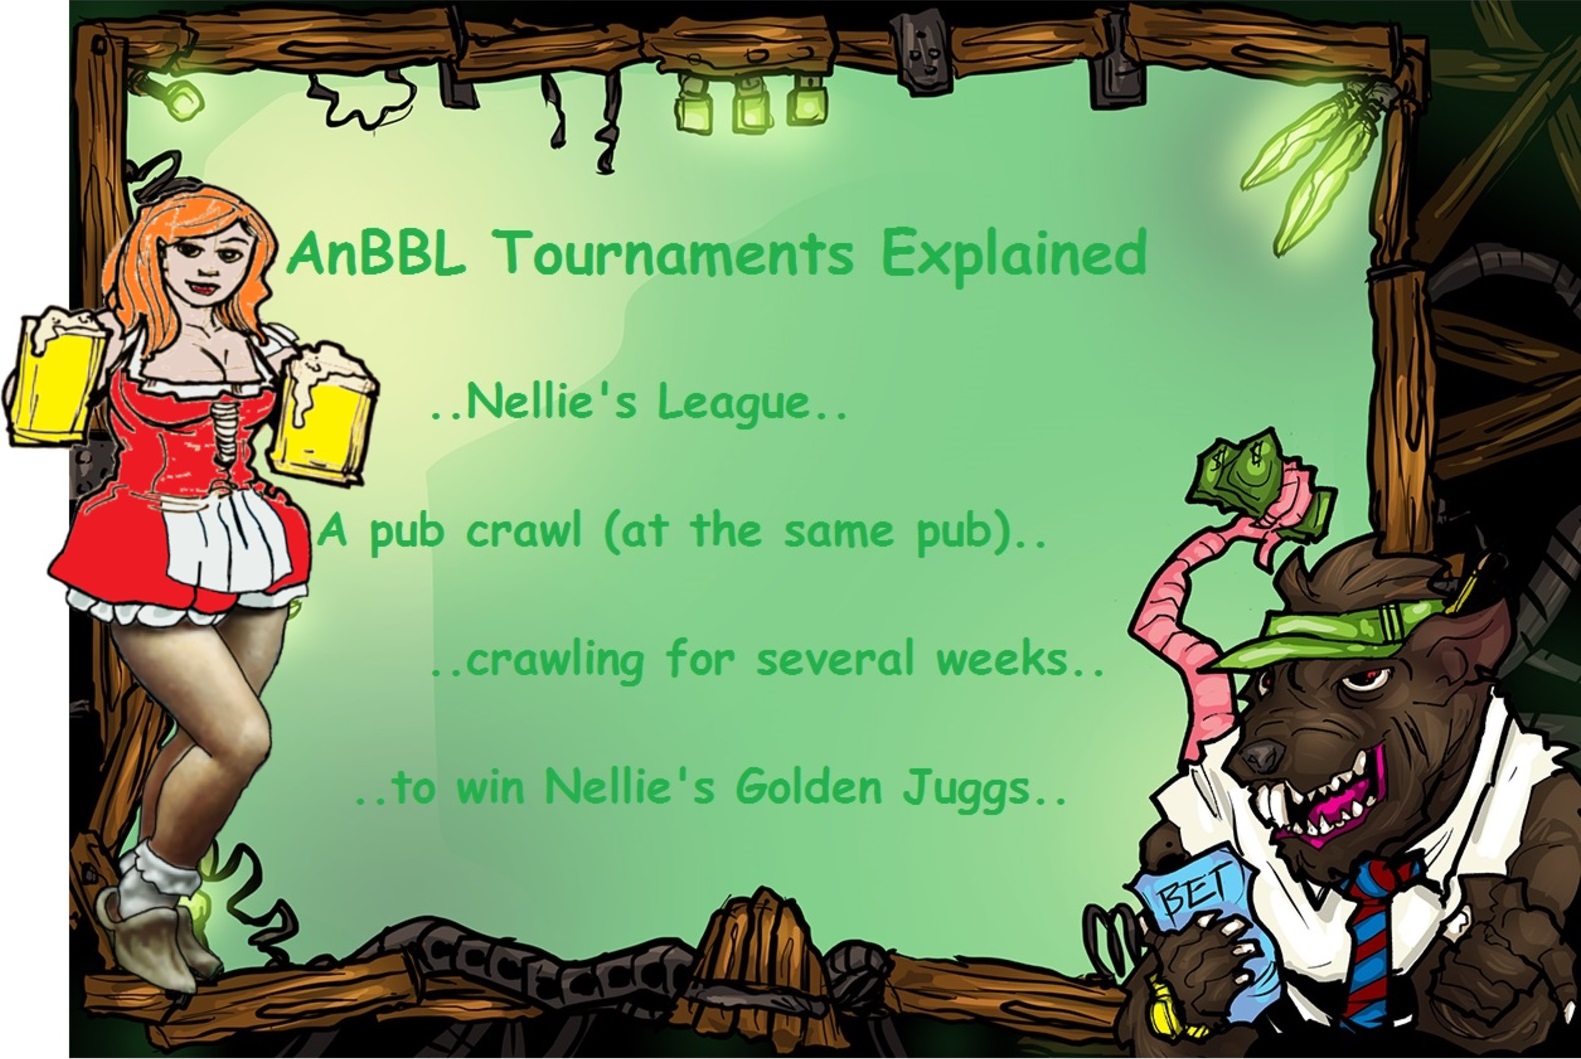 Nellies League explained.